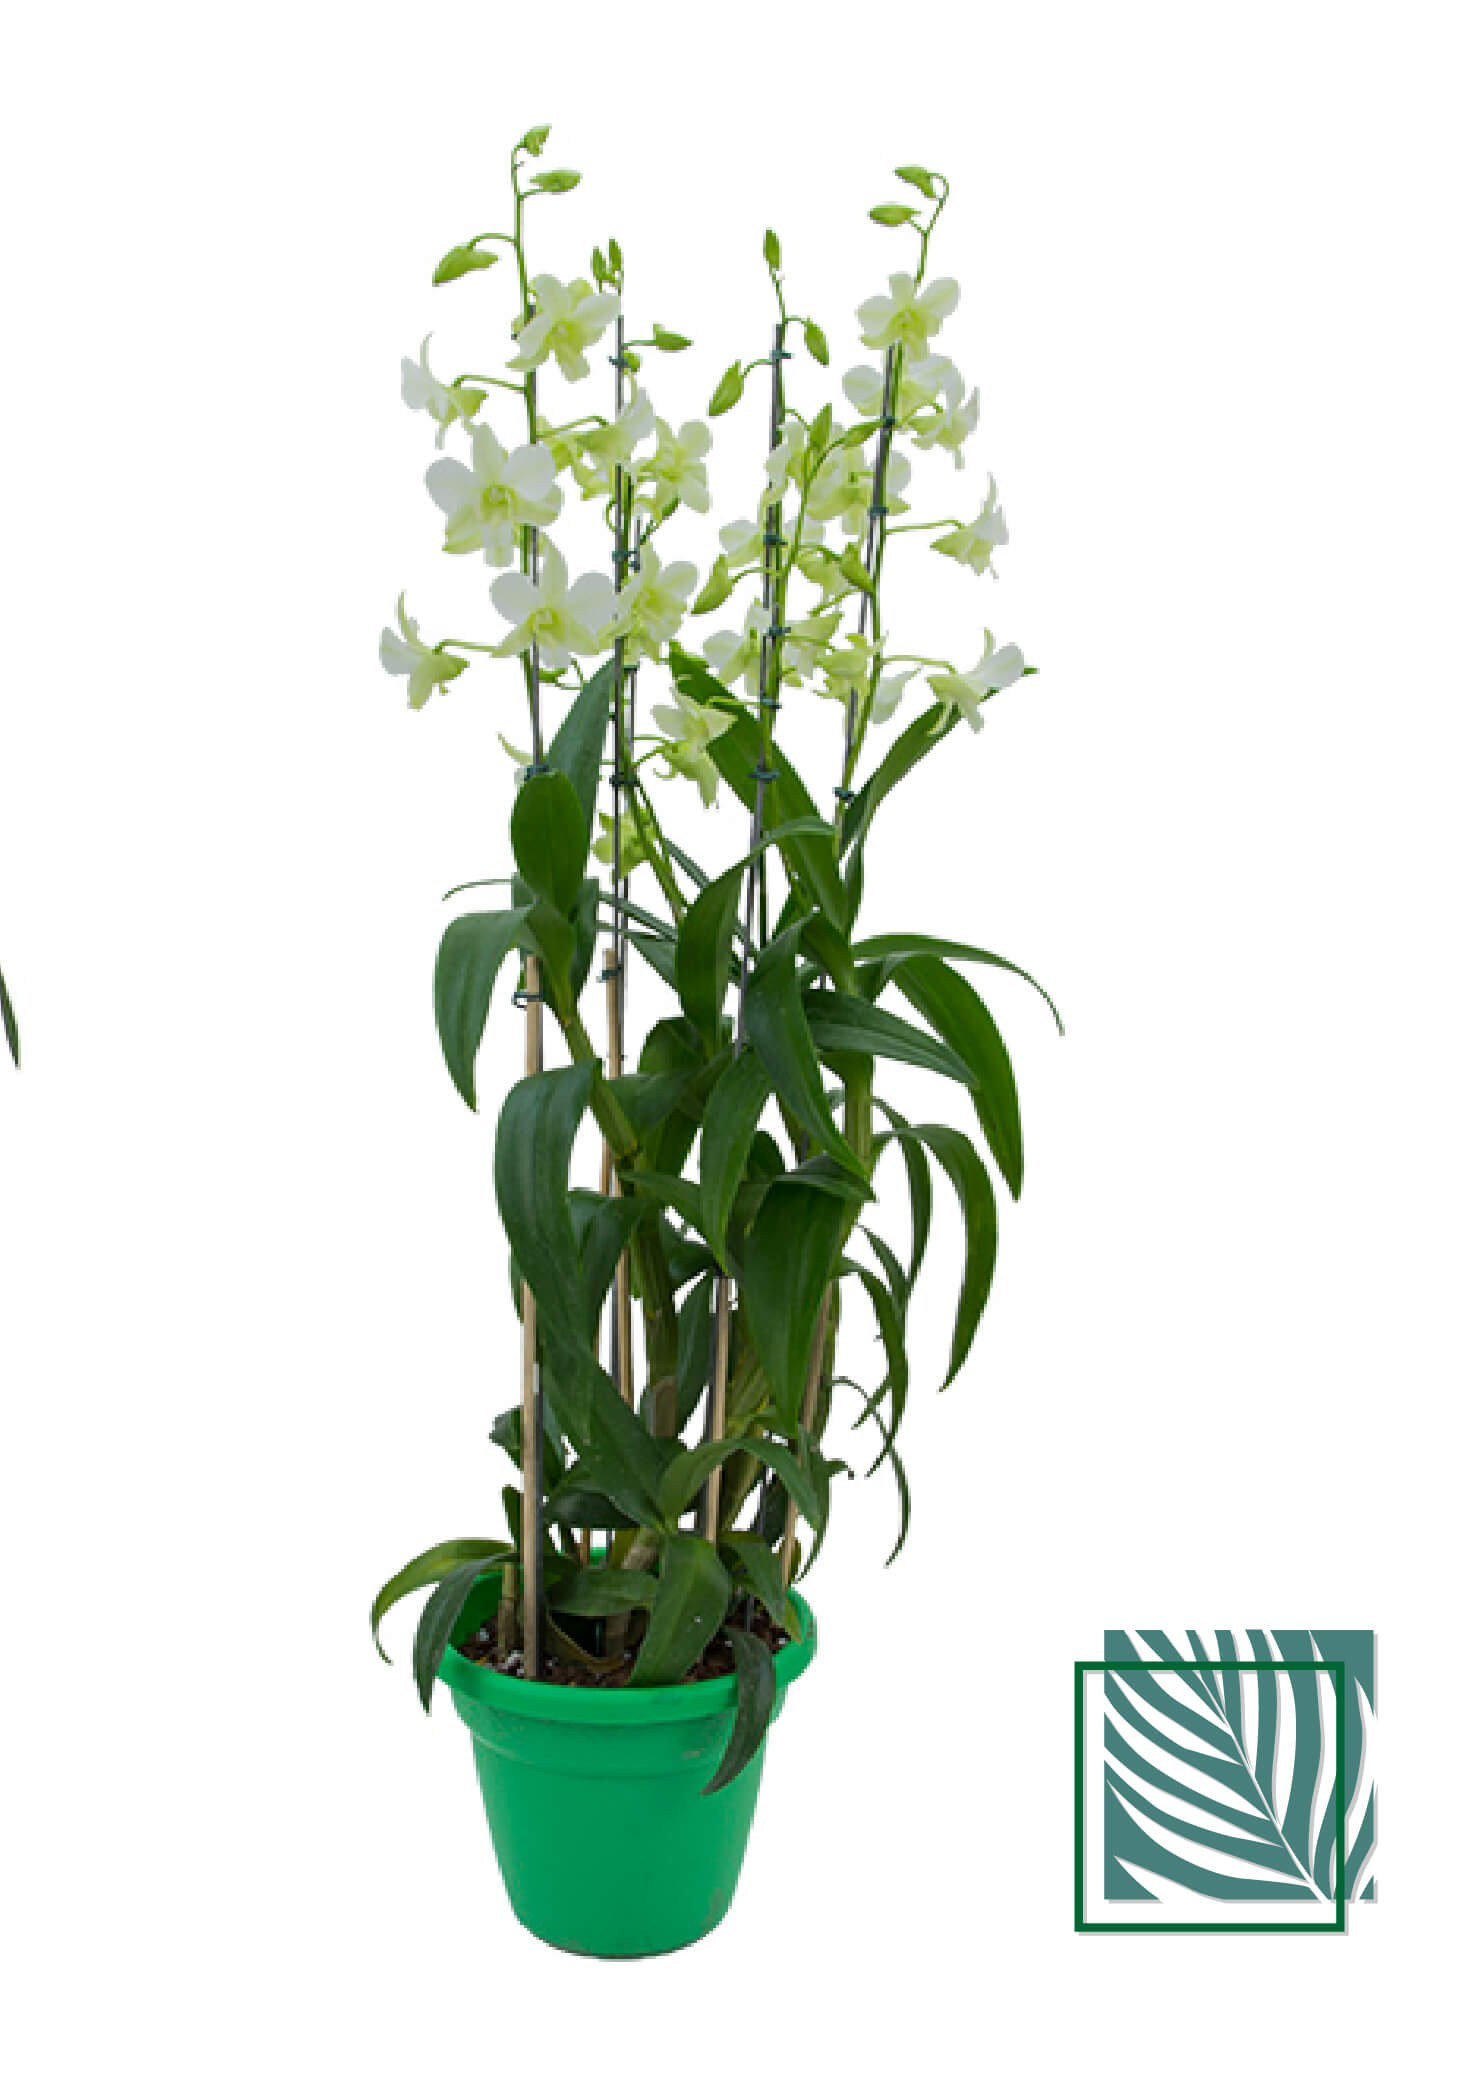 Orquídea Denphalaen - Natureza Urbana: Sofisticação Sustentável